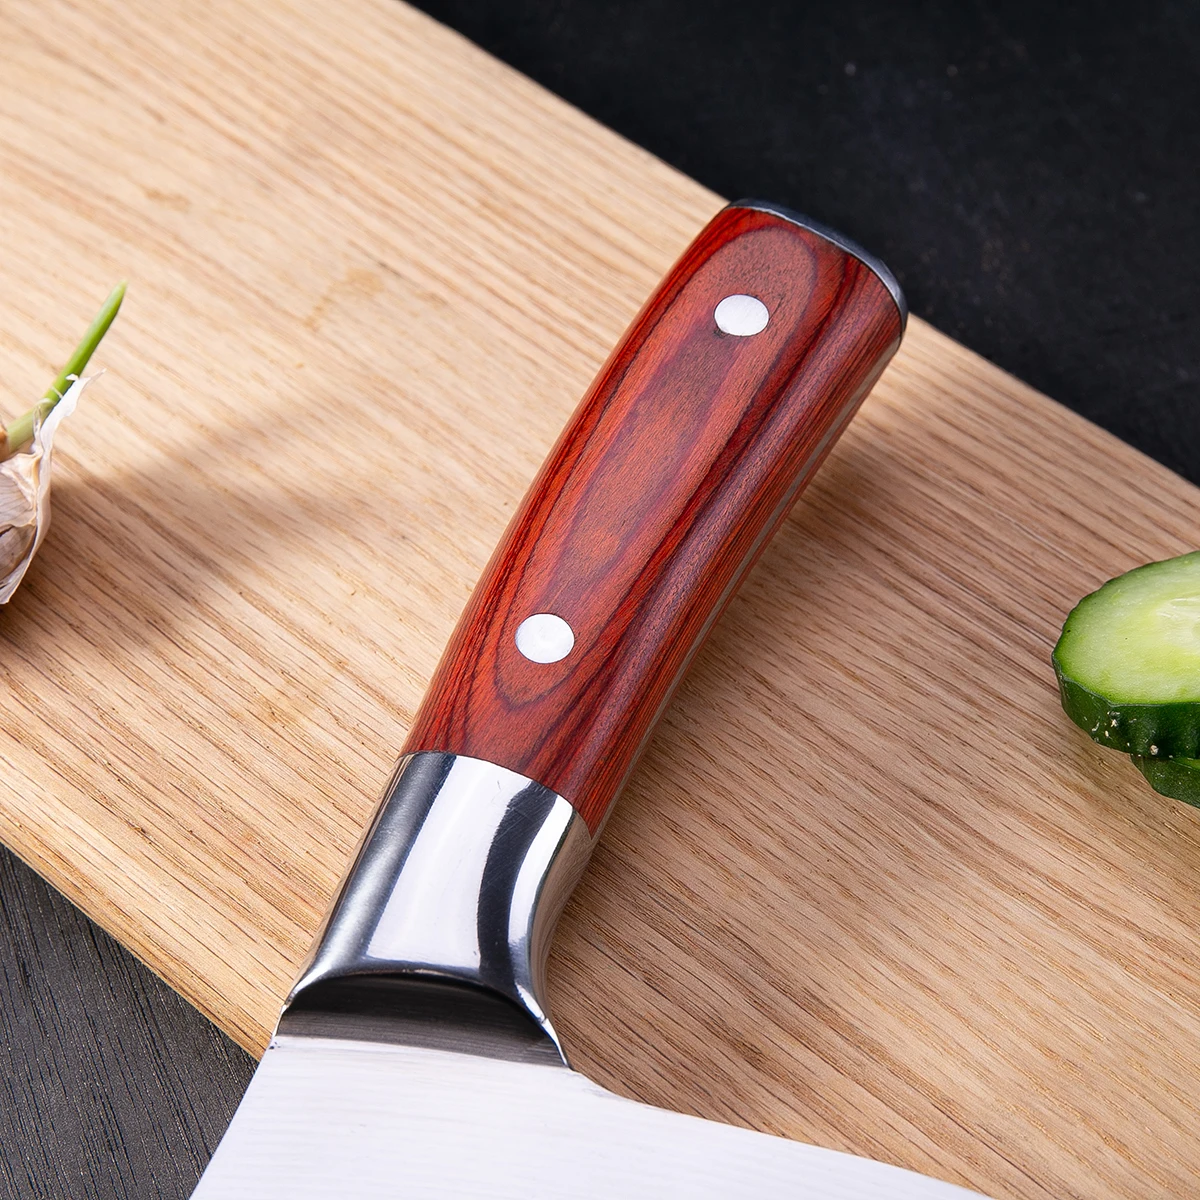 DAOMACHEN нож шеф-повара из нержавеющей стали, острые японские кухонные ножи, для мяса, фруктов, овощей, Cuter, Кливер, инструменты для приготовления пищи